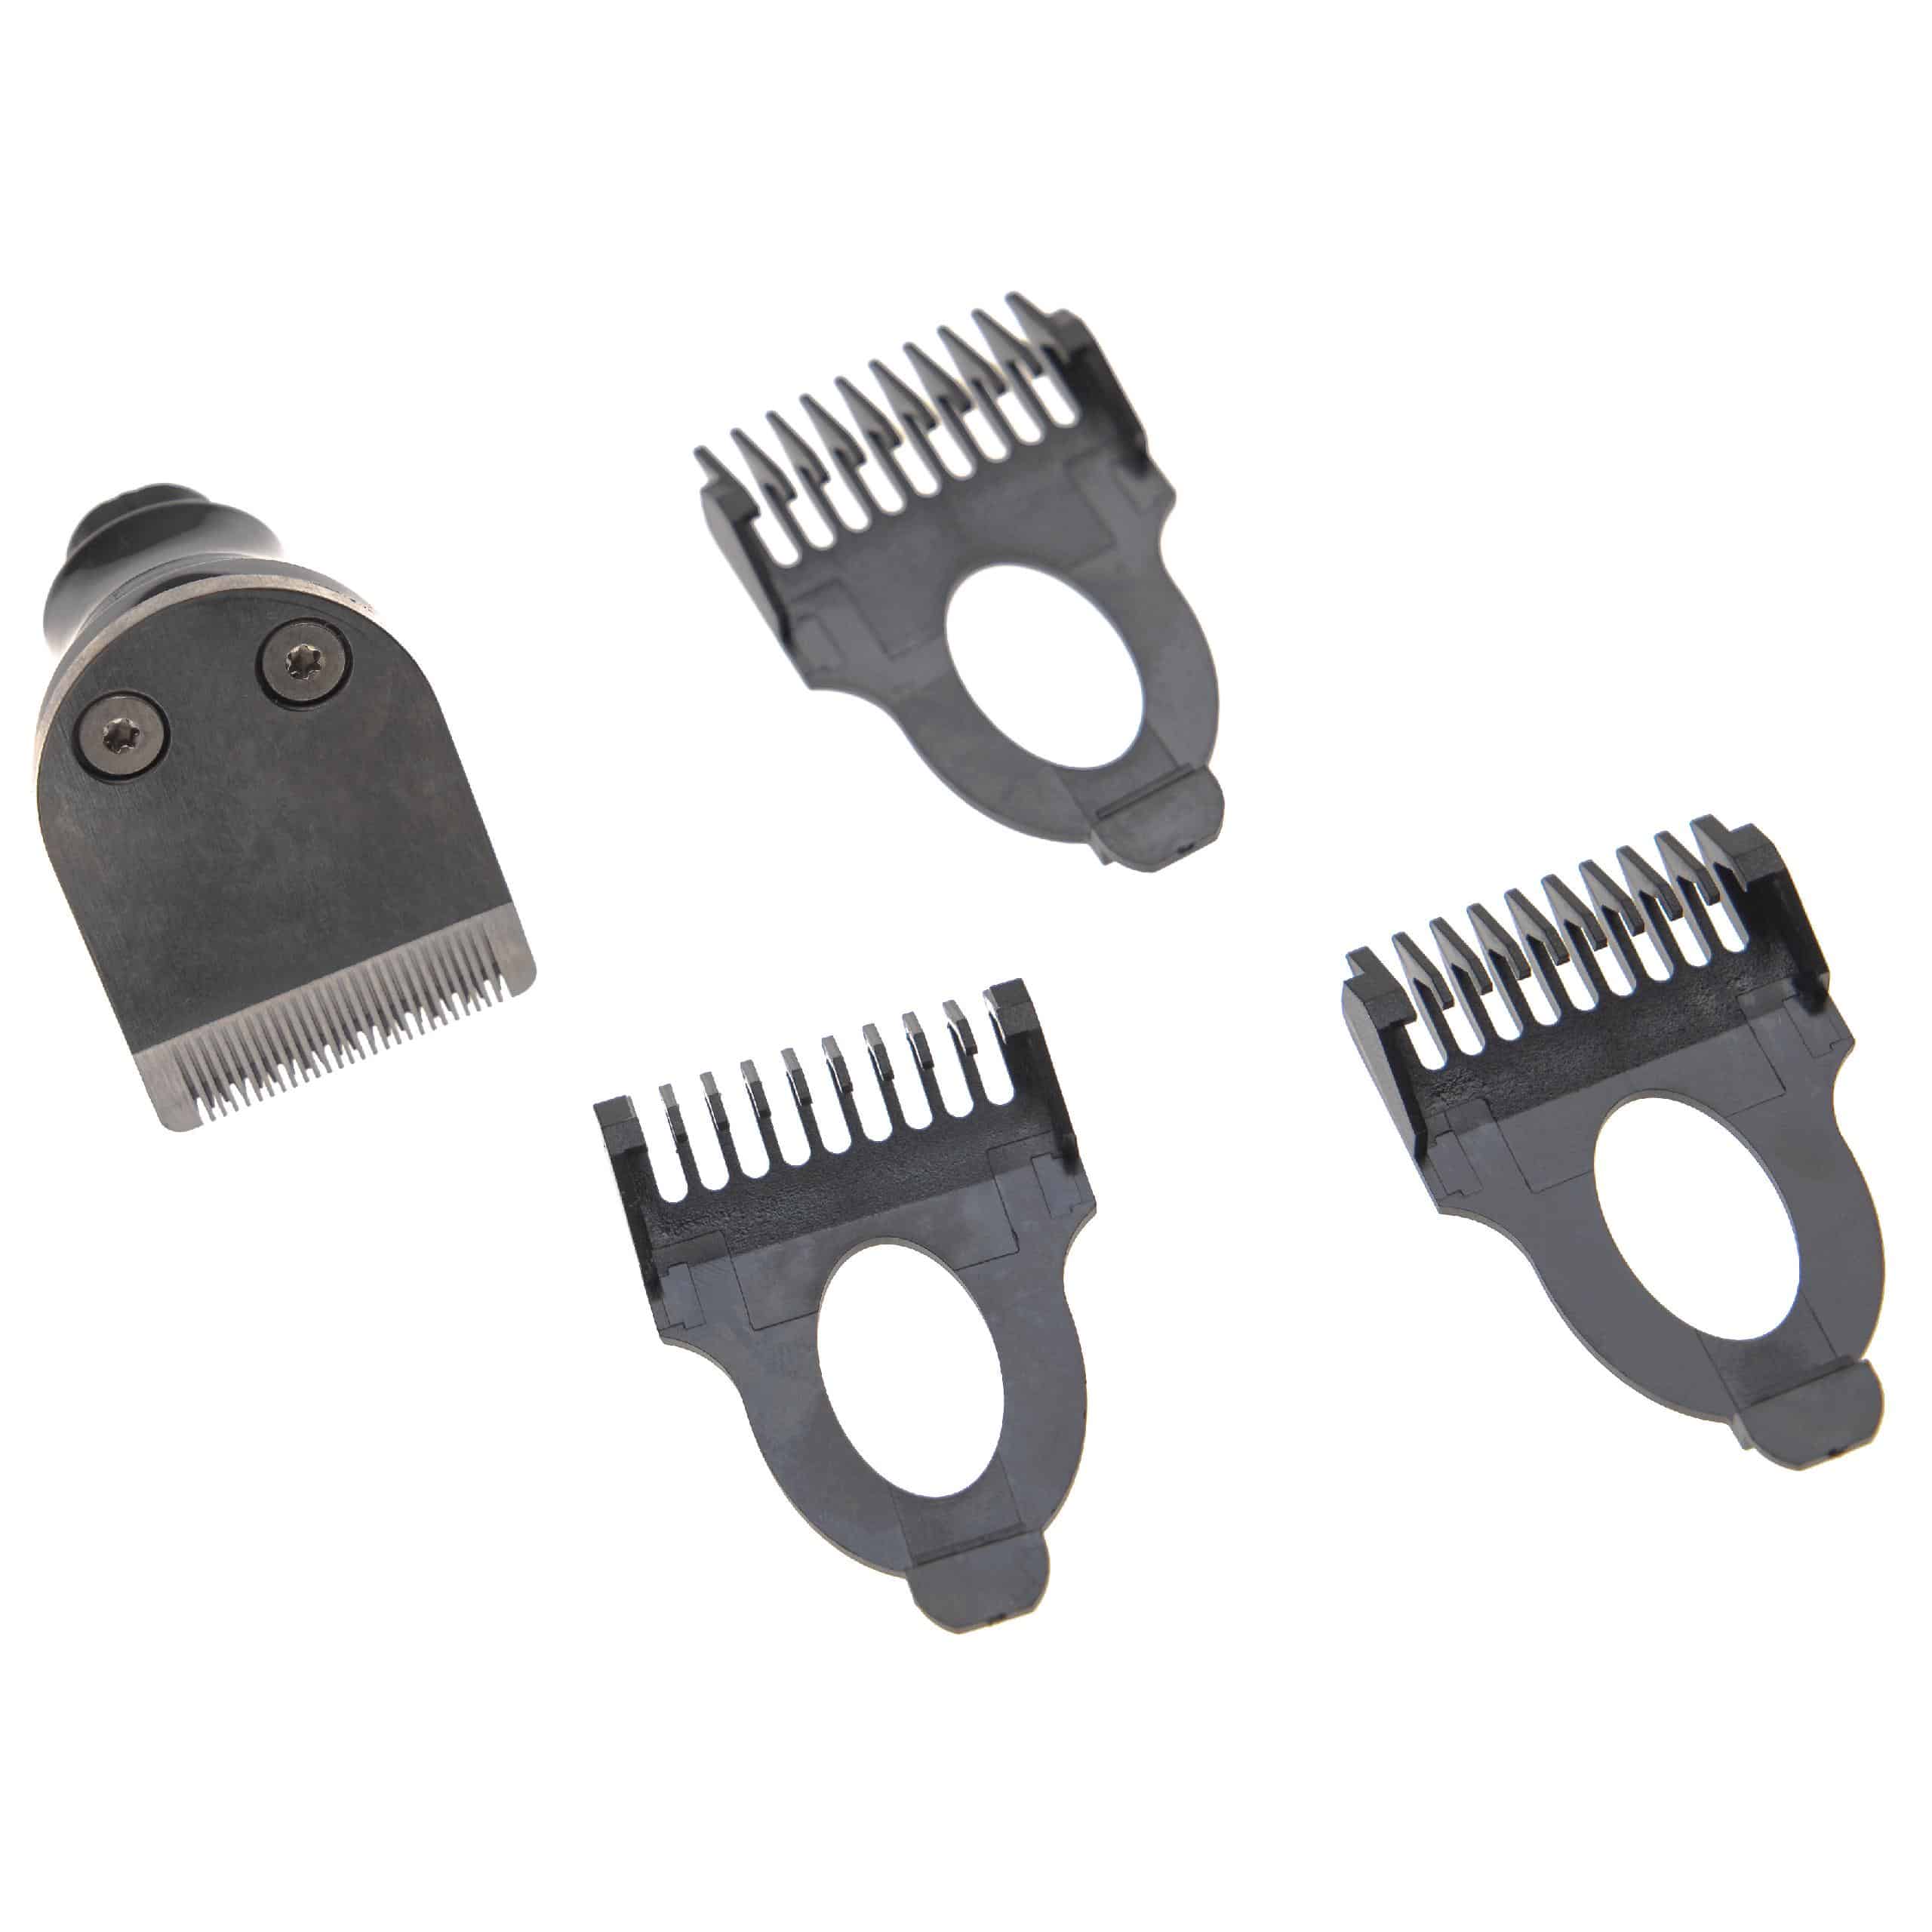 4x Trimmer-Aufsatz-Set passend für Rasierer - 4-tlg. Kit mit 3mm / 5mm / 7mm Bartkamm